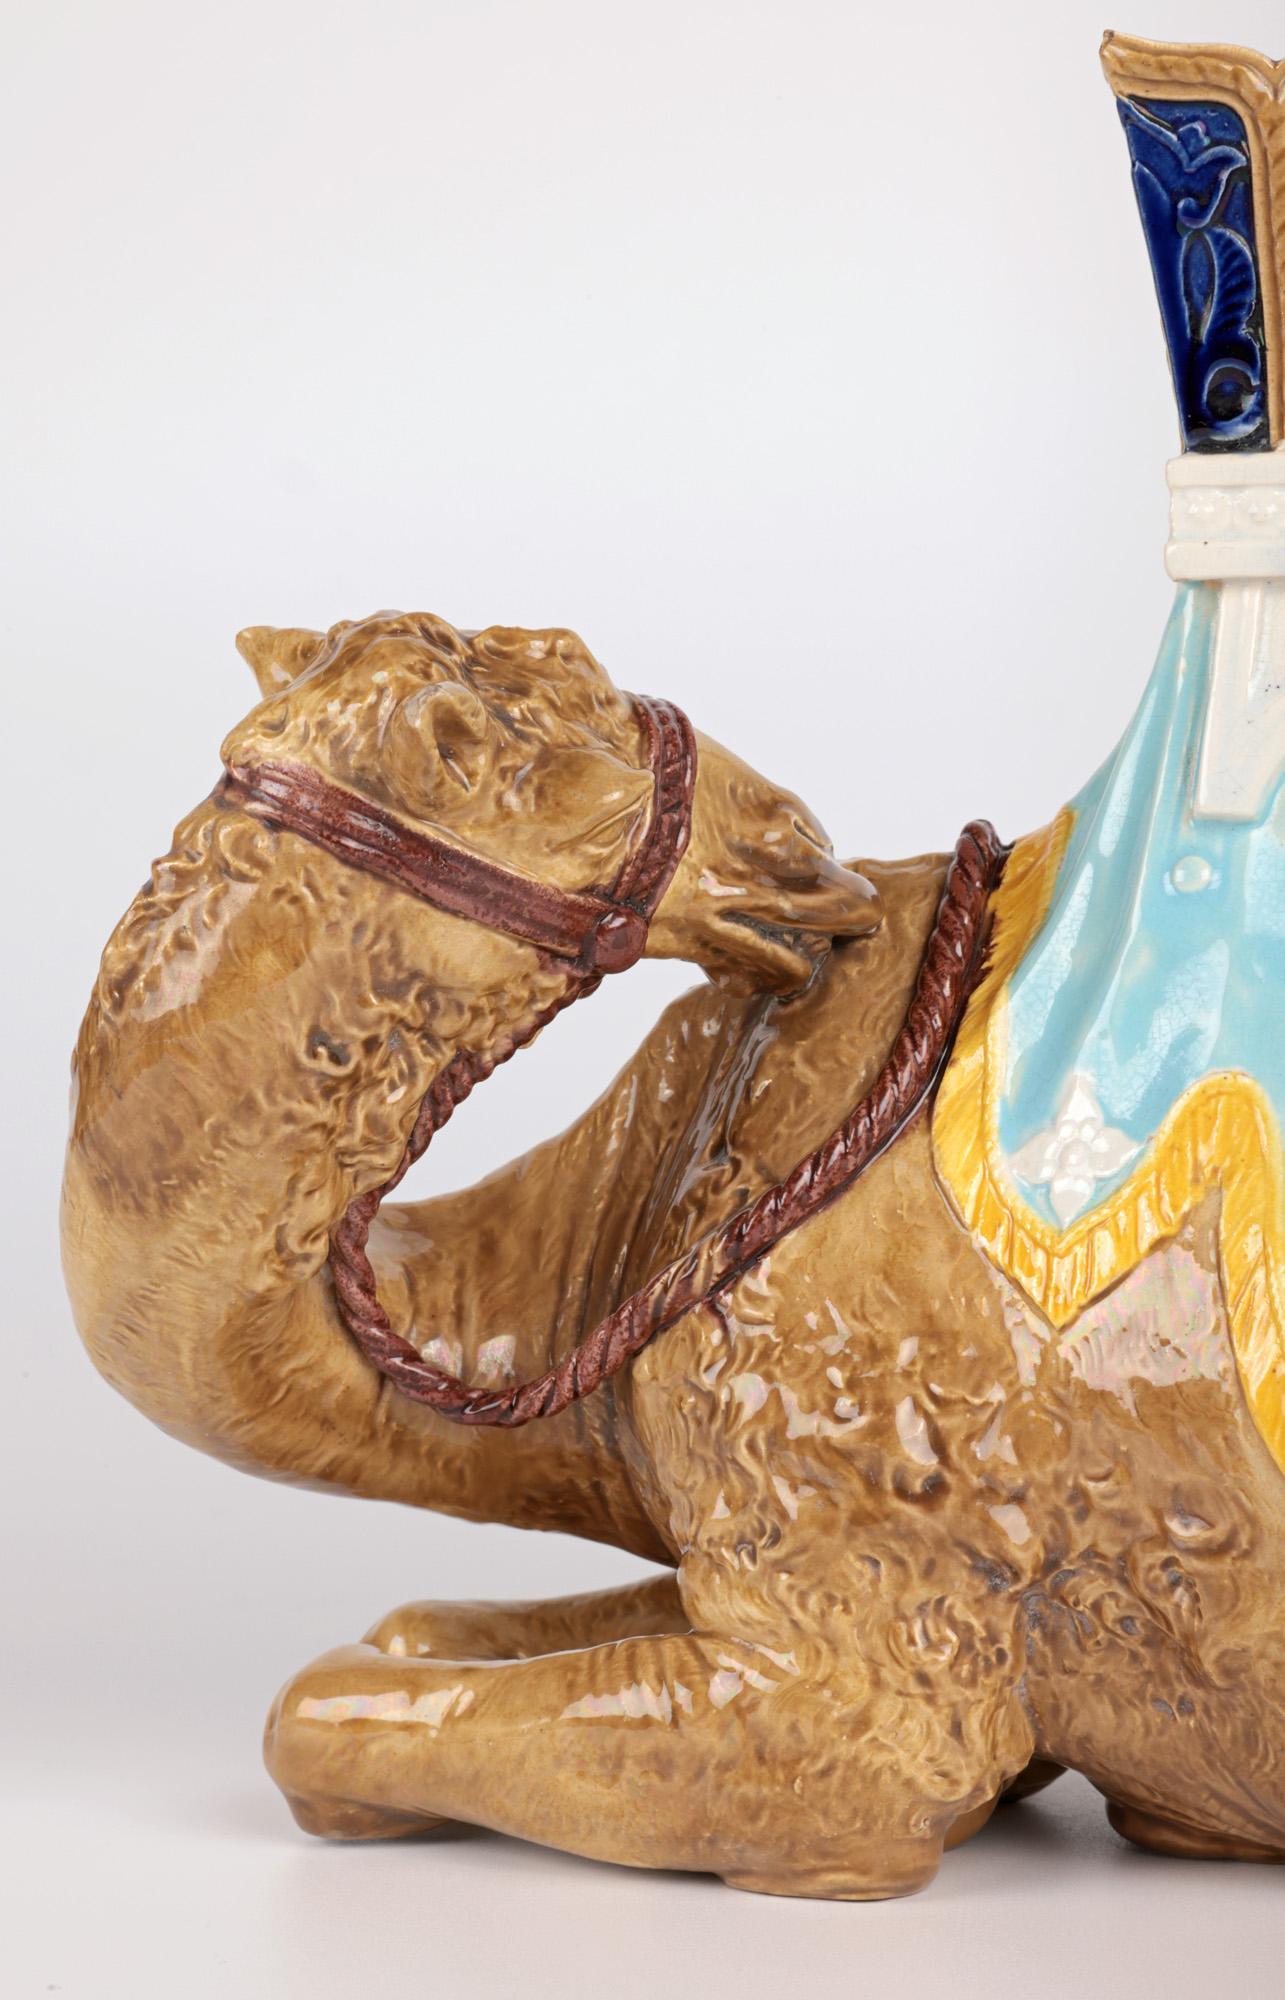 Une très rare et inhabituelle figure antique en poterie majolique Royal Worcester représentant un chameau et un howdah, réalisée par le célèbre potier James Hadley (britannique, 1837-1903) et datée du 22 juin 1870. 

James Hadley était un potier et